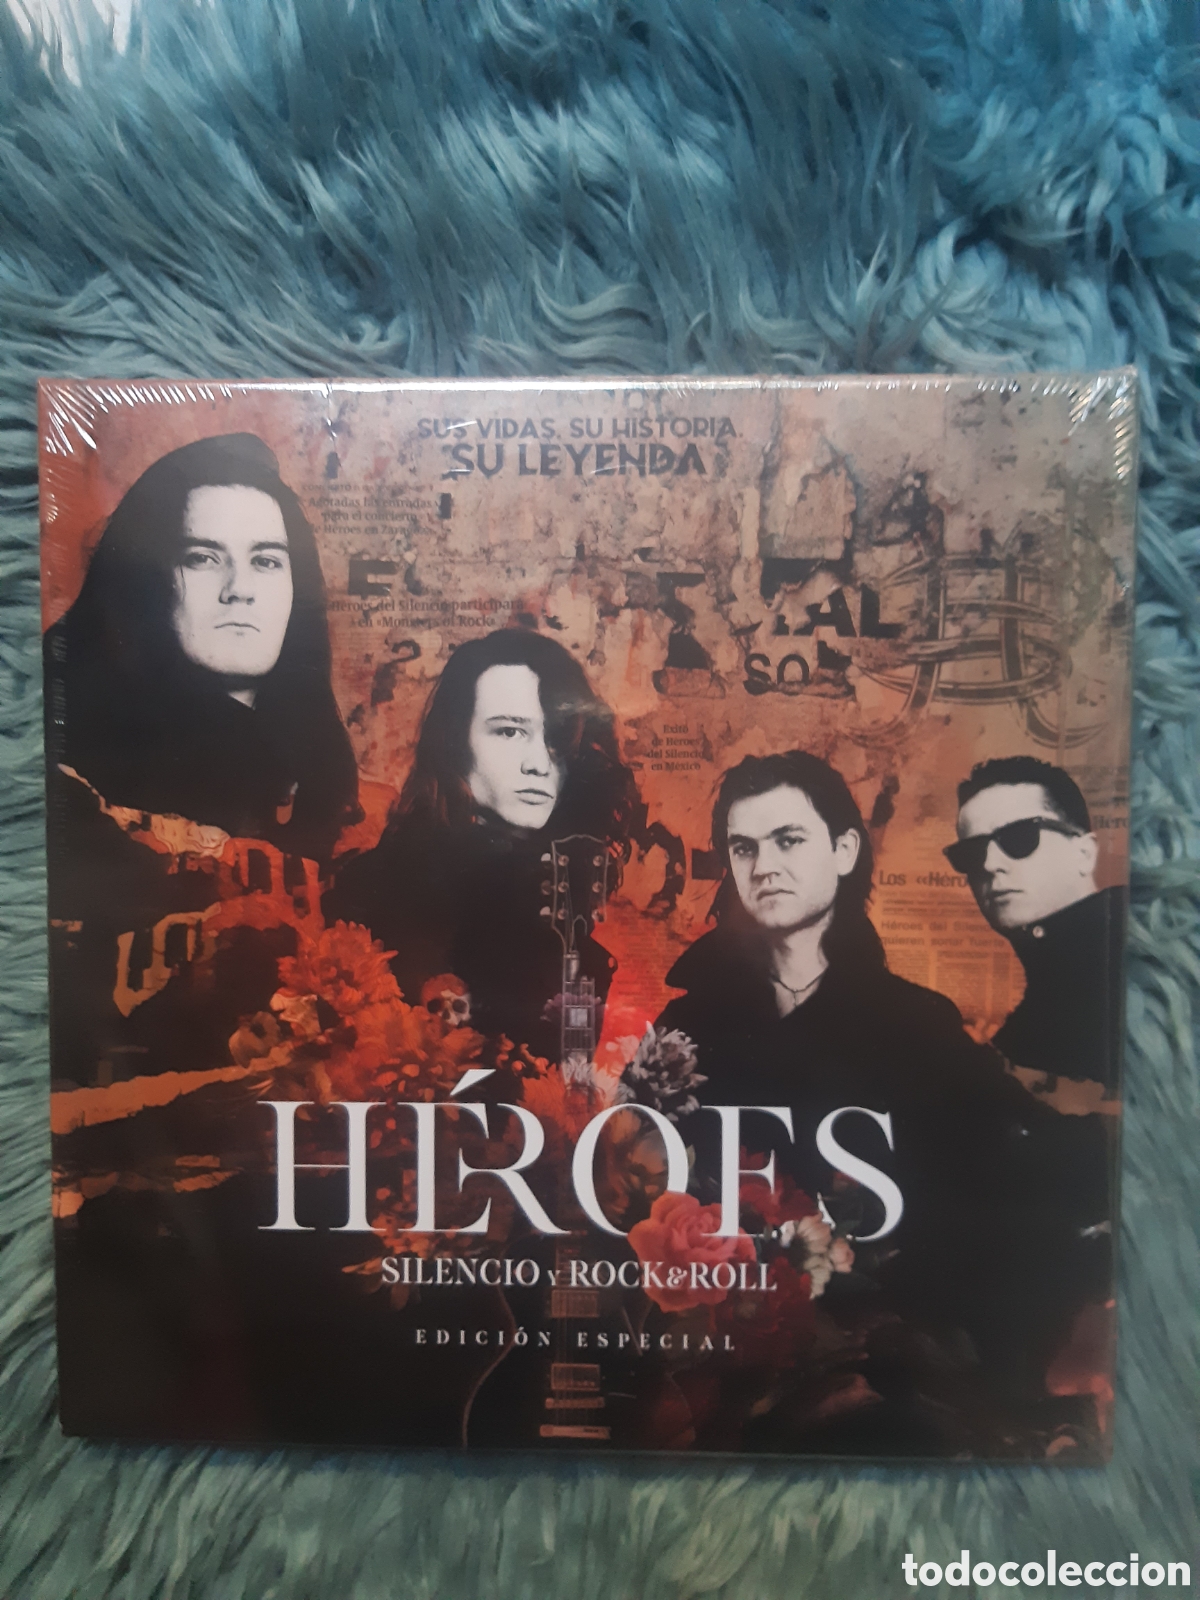 Héroes Del Silencio - Heroes: Silencio Y Rock & Roll - Special Edition Box  - 2LP Picture Disc + 2CD + DVD, Blu-ray, Libreto & Poster - Vinyl 